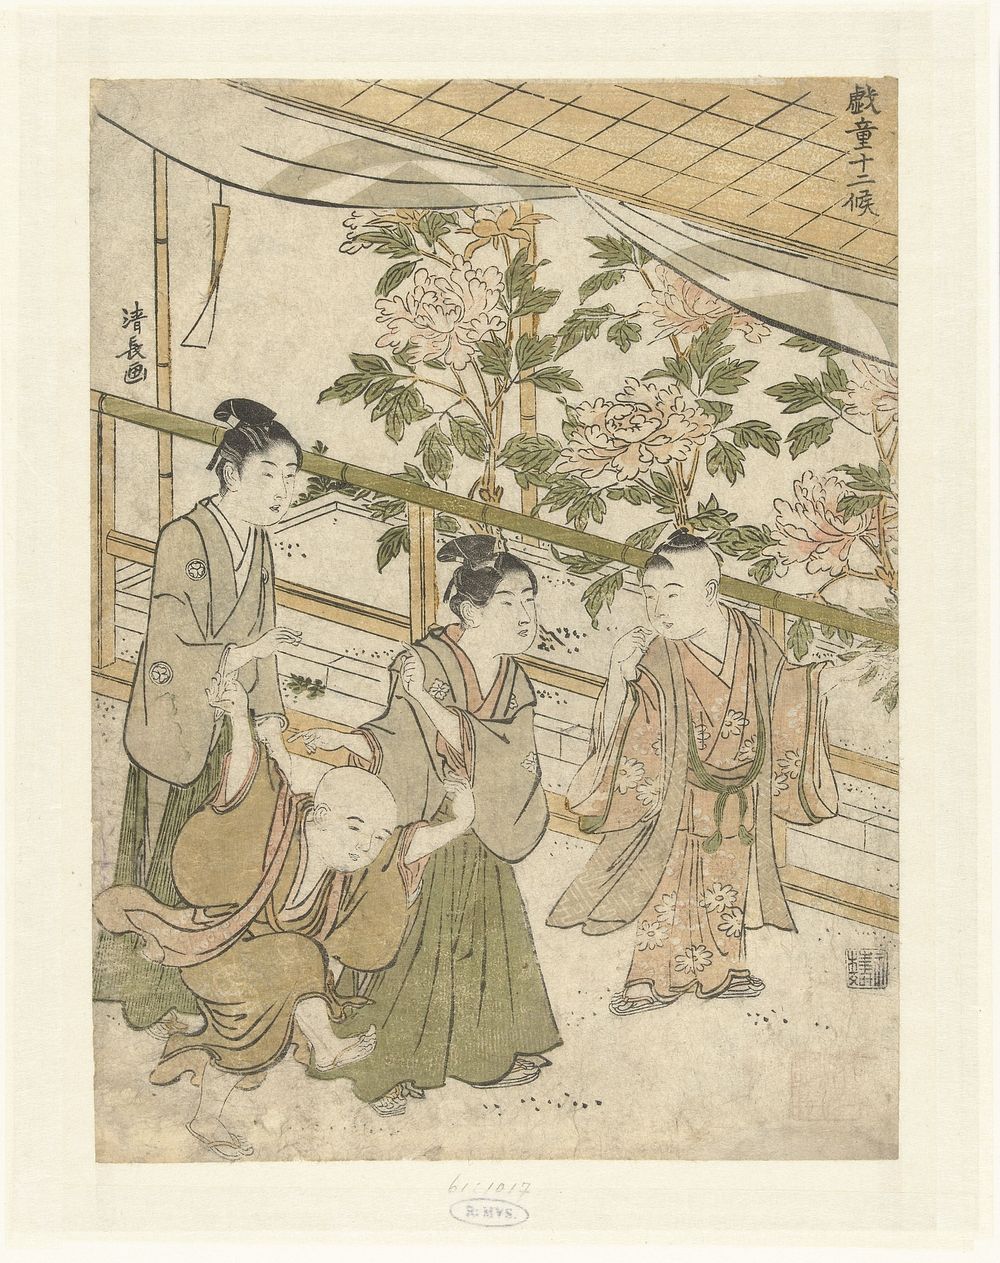 Vier jongens spelend bij een perkje met pioenrozen (1781 - 1785) by Torii Kiyonaga and Eijûdô